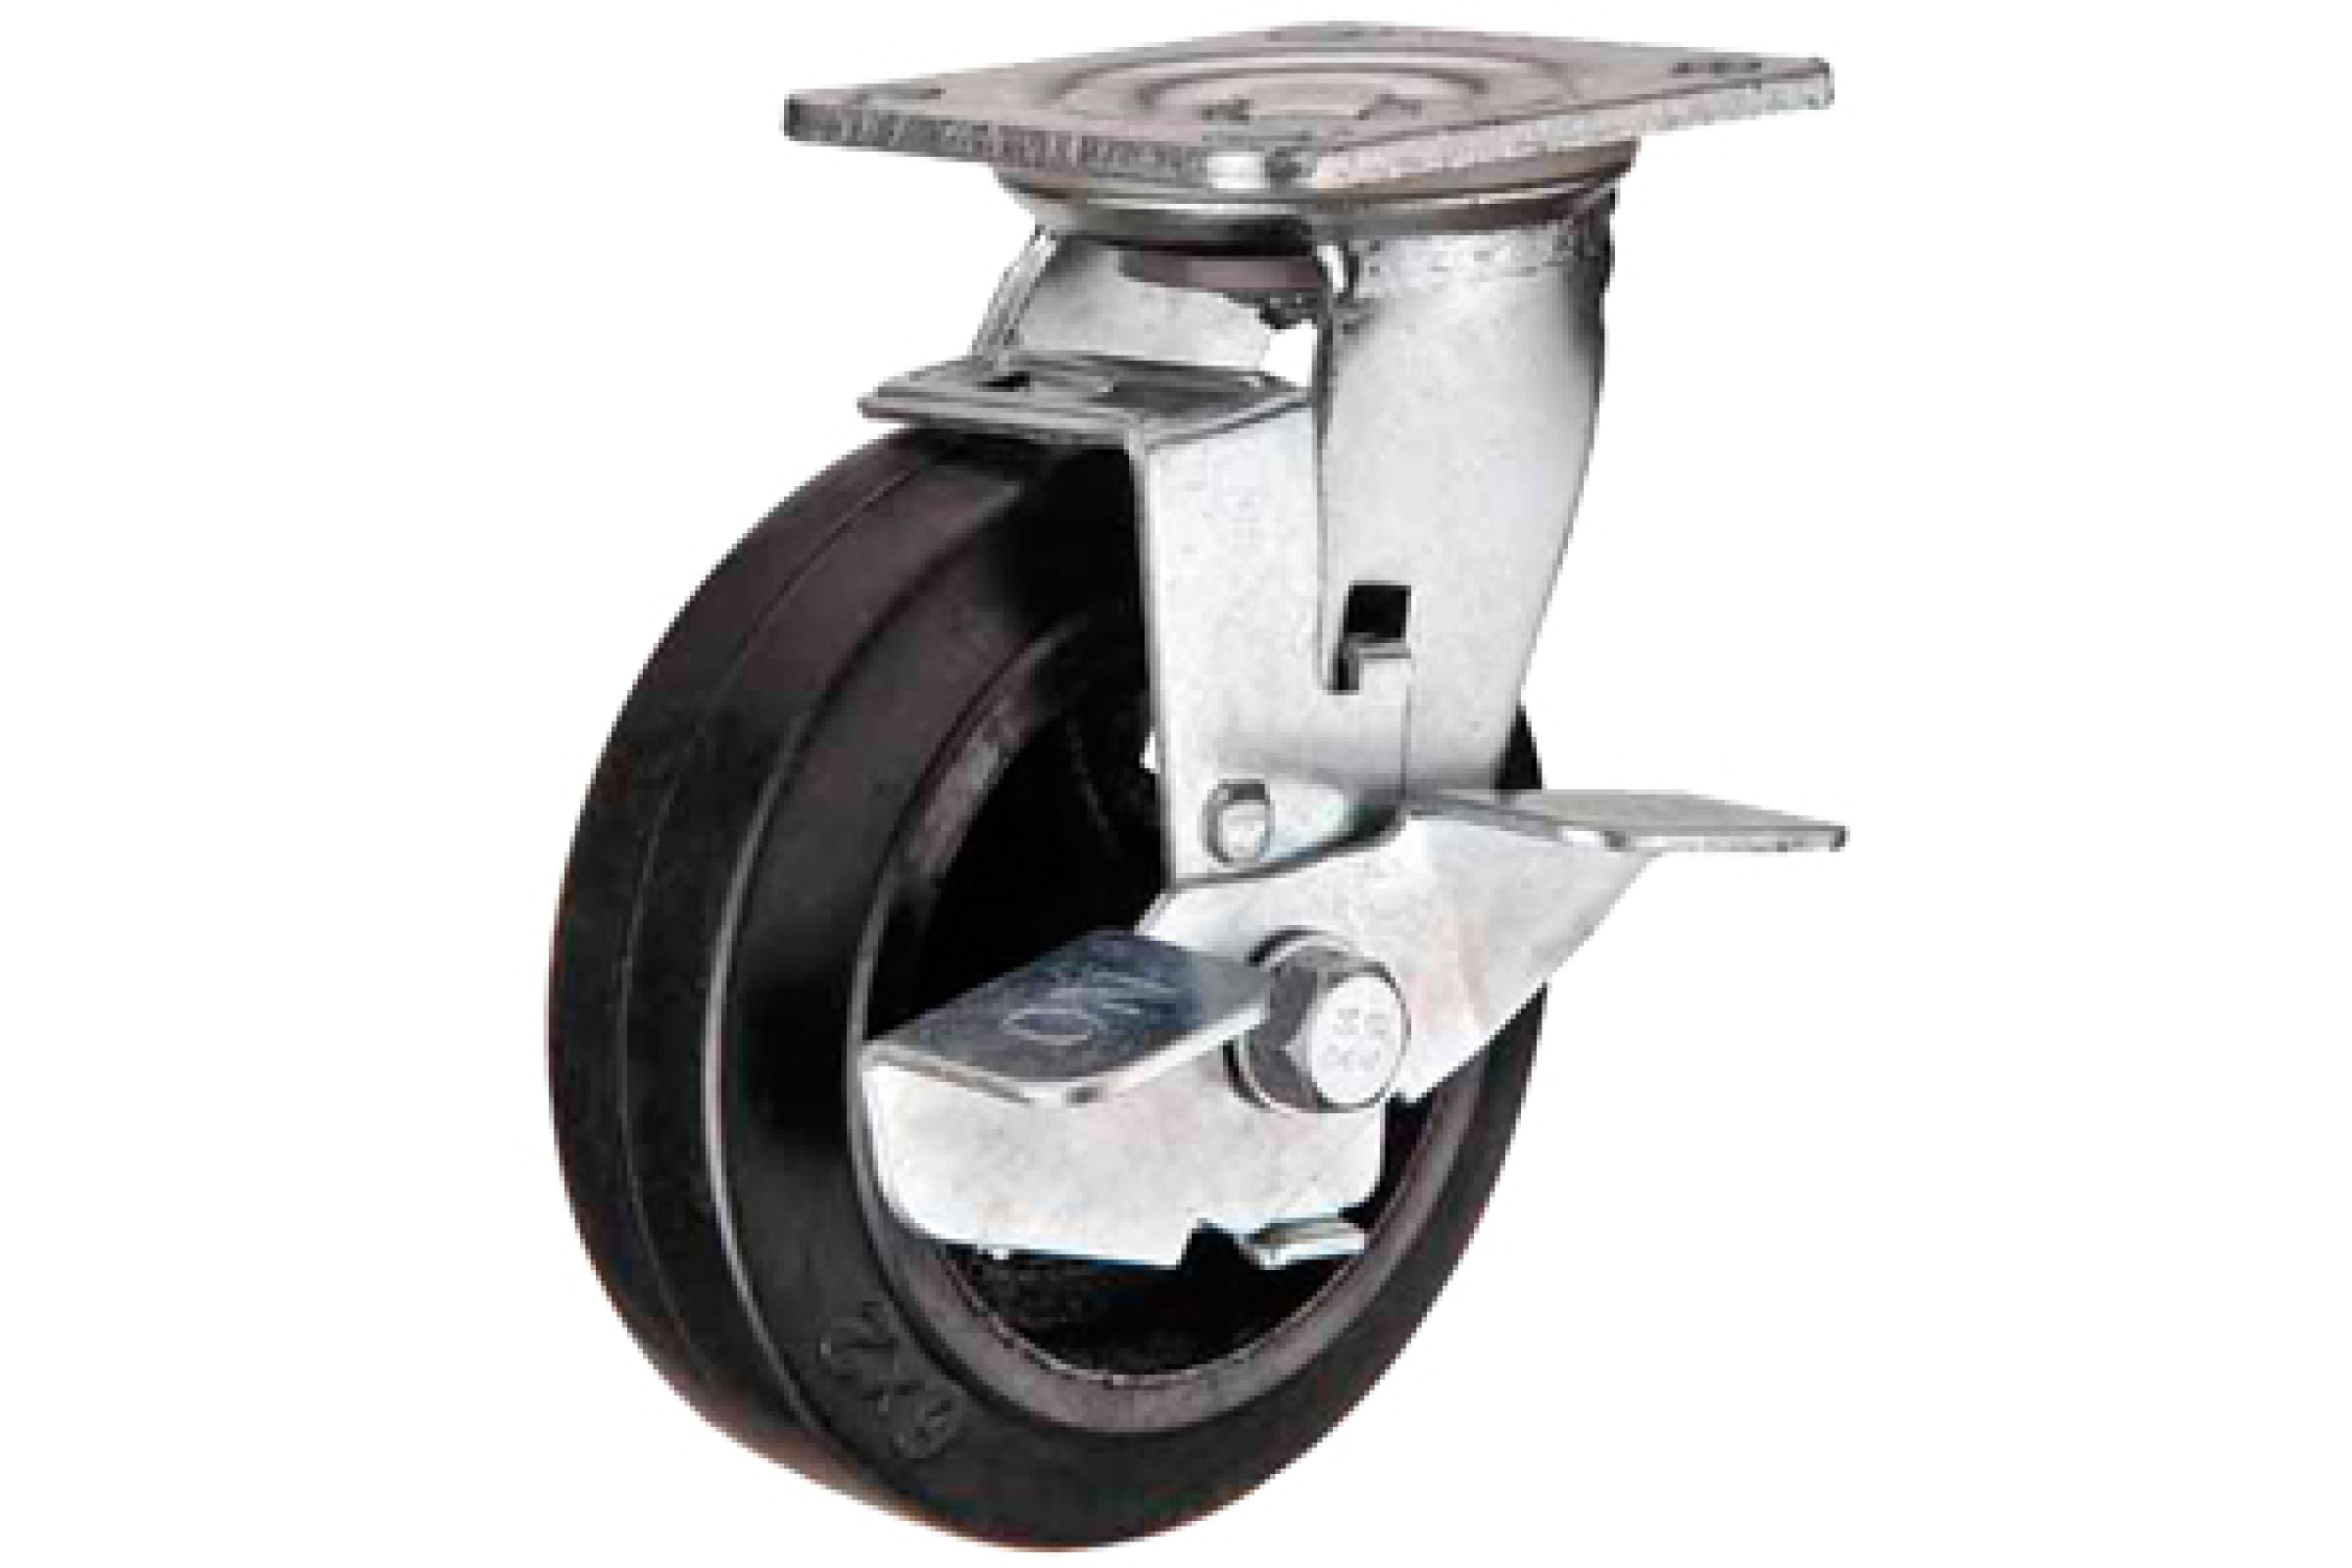 А5 Большегрузное чугунное колесо, 100мм - SCDB 42 1000097 большегрузное поворотное колесо euro lift